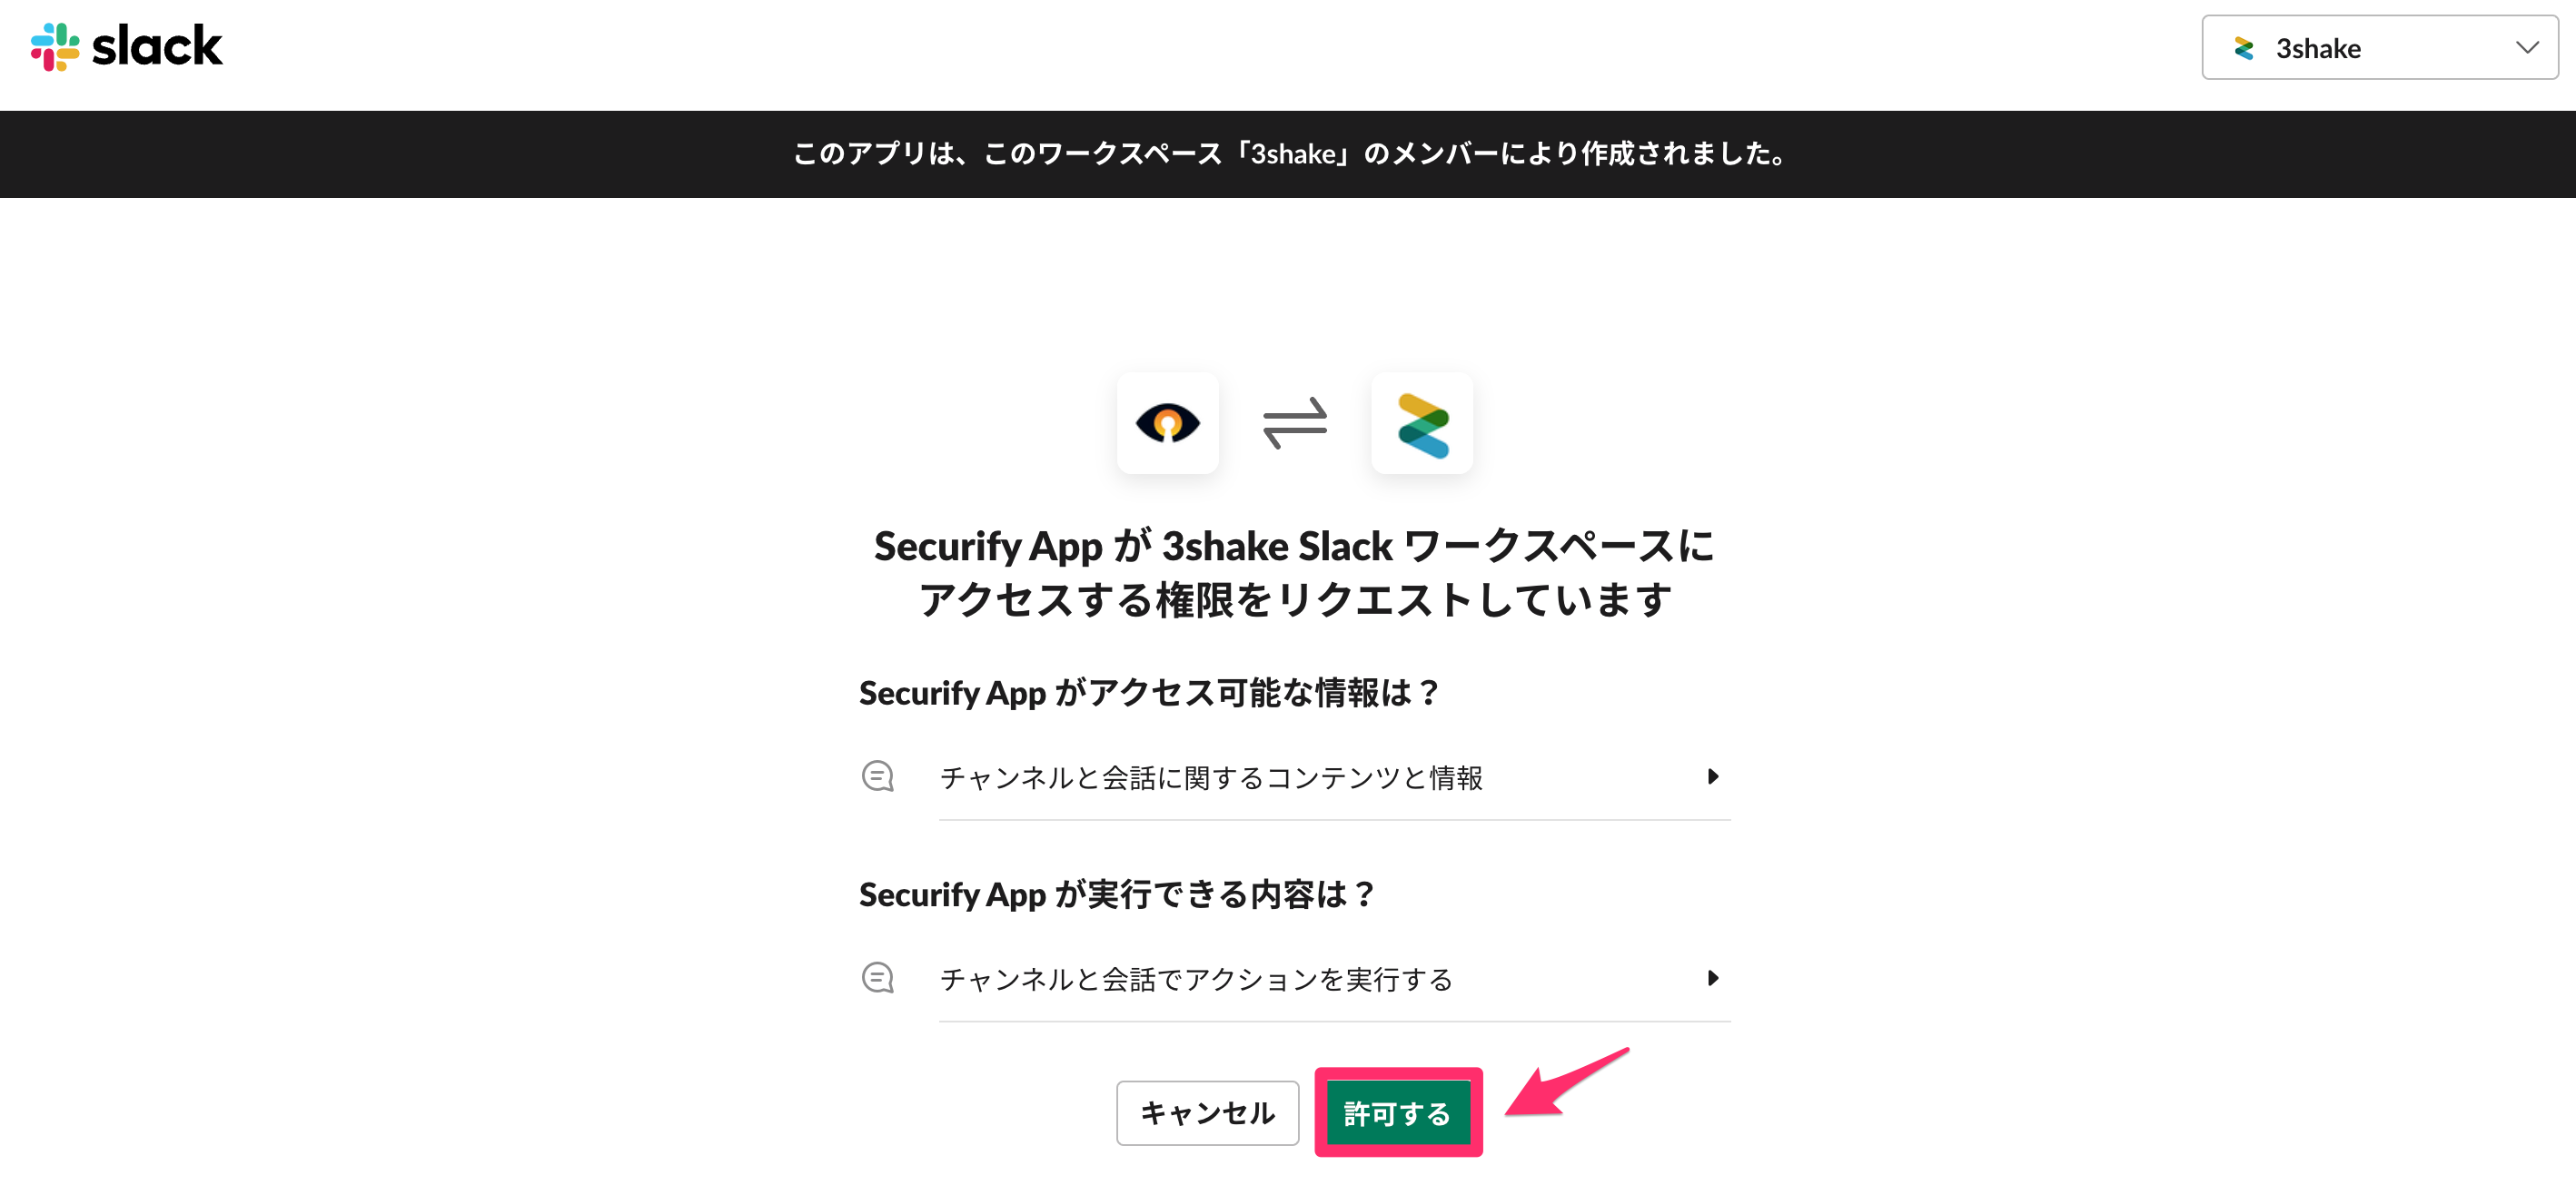 Securify_App_Slack__________.png